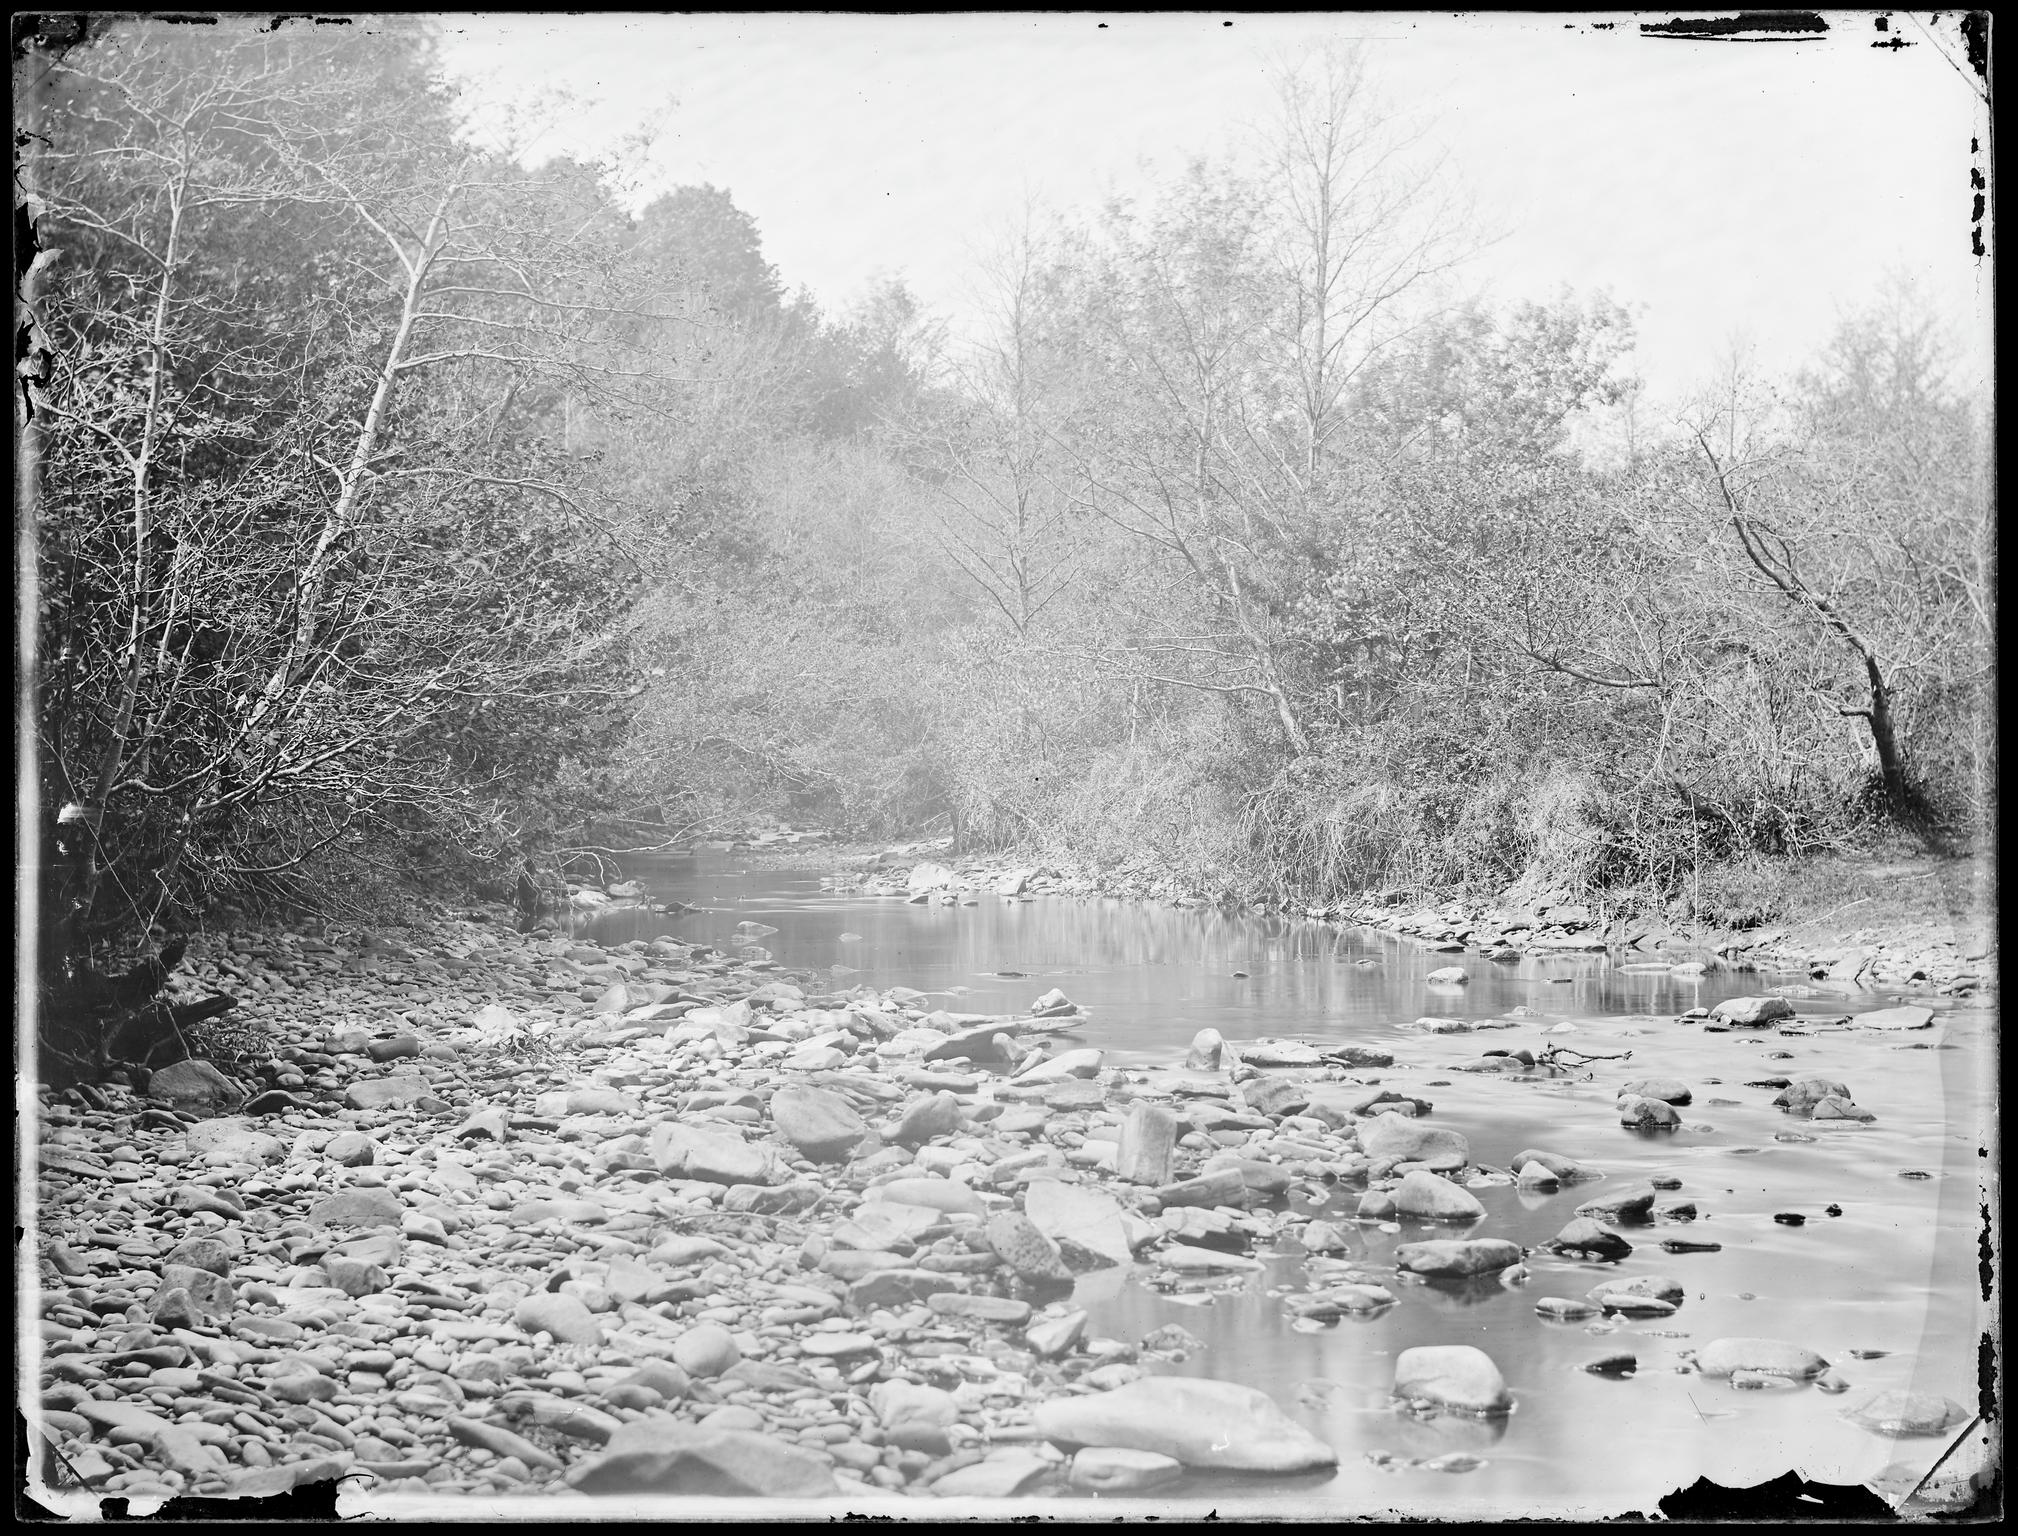 River scene at Lanelay, negative